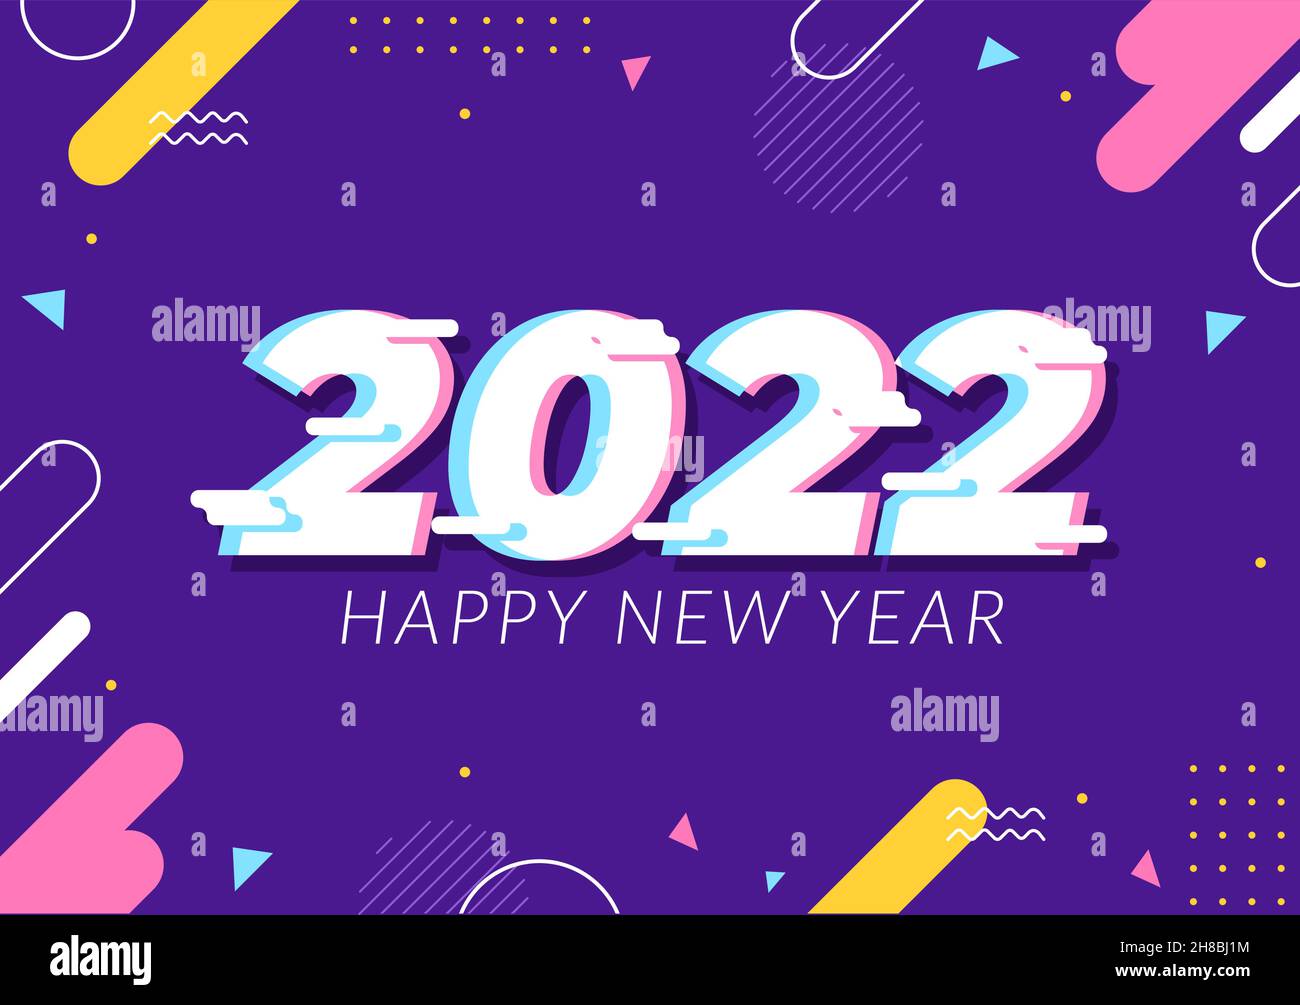 Frohes neues Jahr 2022 Vorlage flache Design Illustration mit Ribbons und Konfetti auf einem bunten Hintergrund für Poster, Broschüre oder Banner Stock Vektor